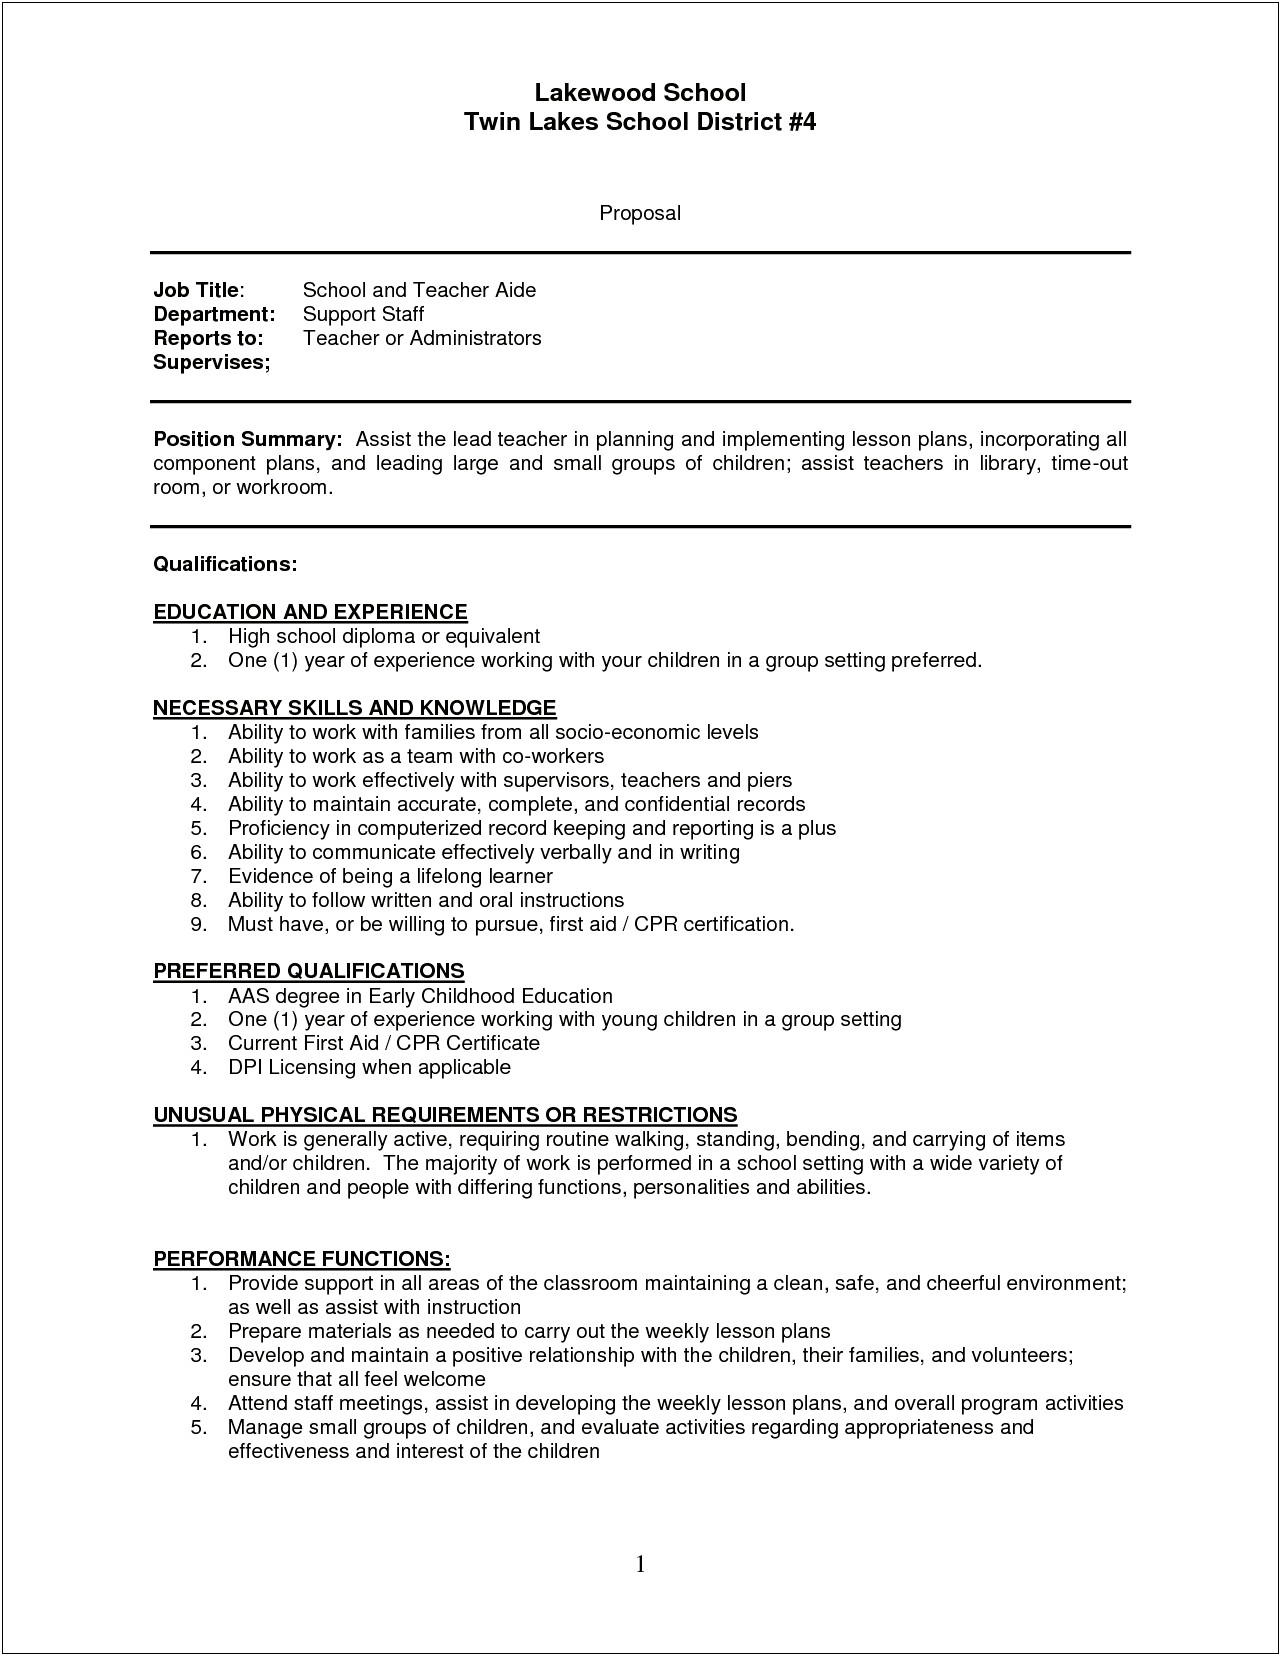 Resume Sample For Teachers Assistant